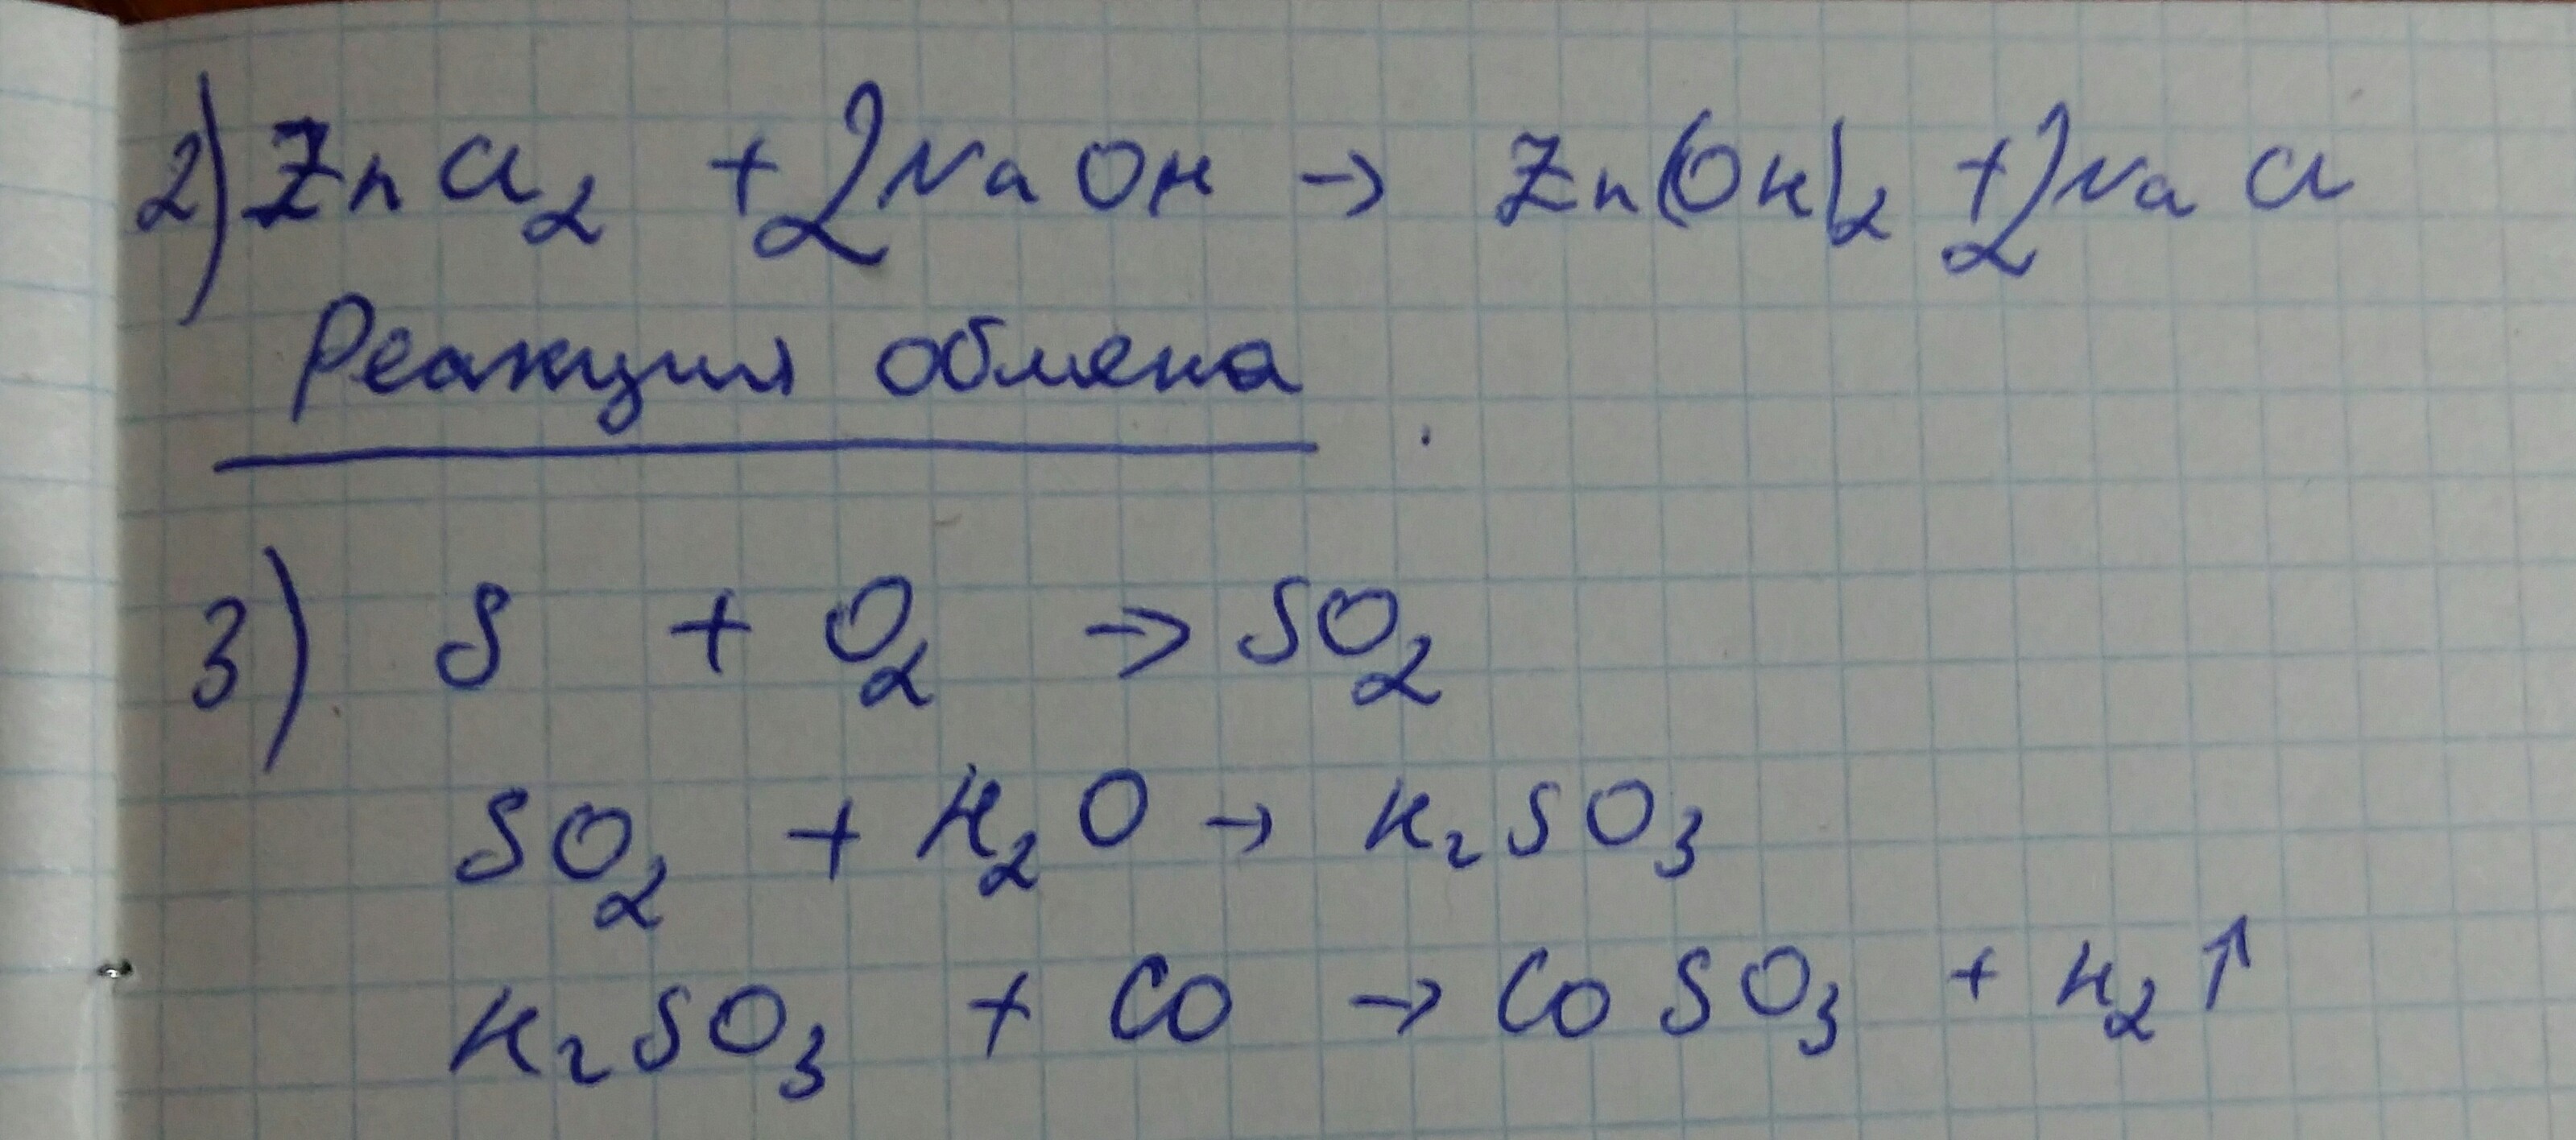 Cus zn. Схеме превращения s0 - s+4 соответствует химические уравнения. В схеме превращений cu Oh 2 a b x. Замещения.